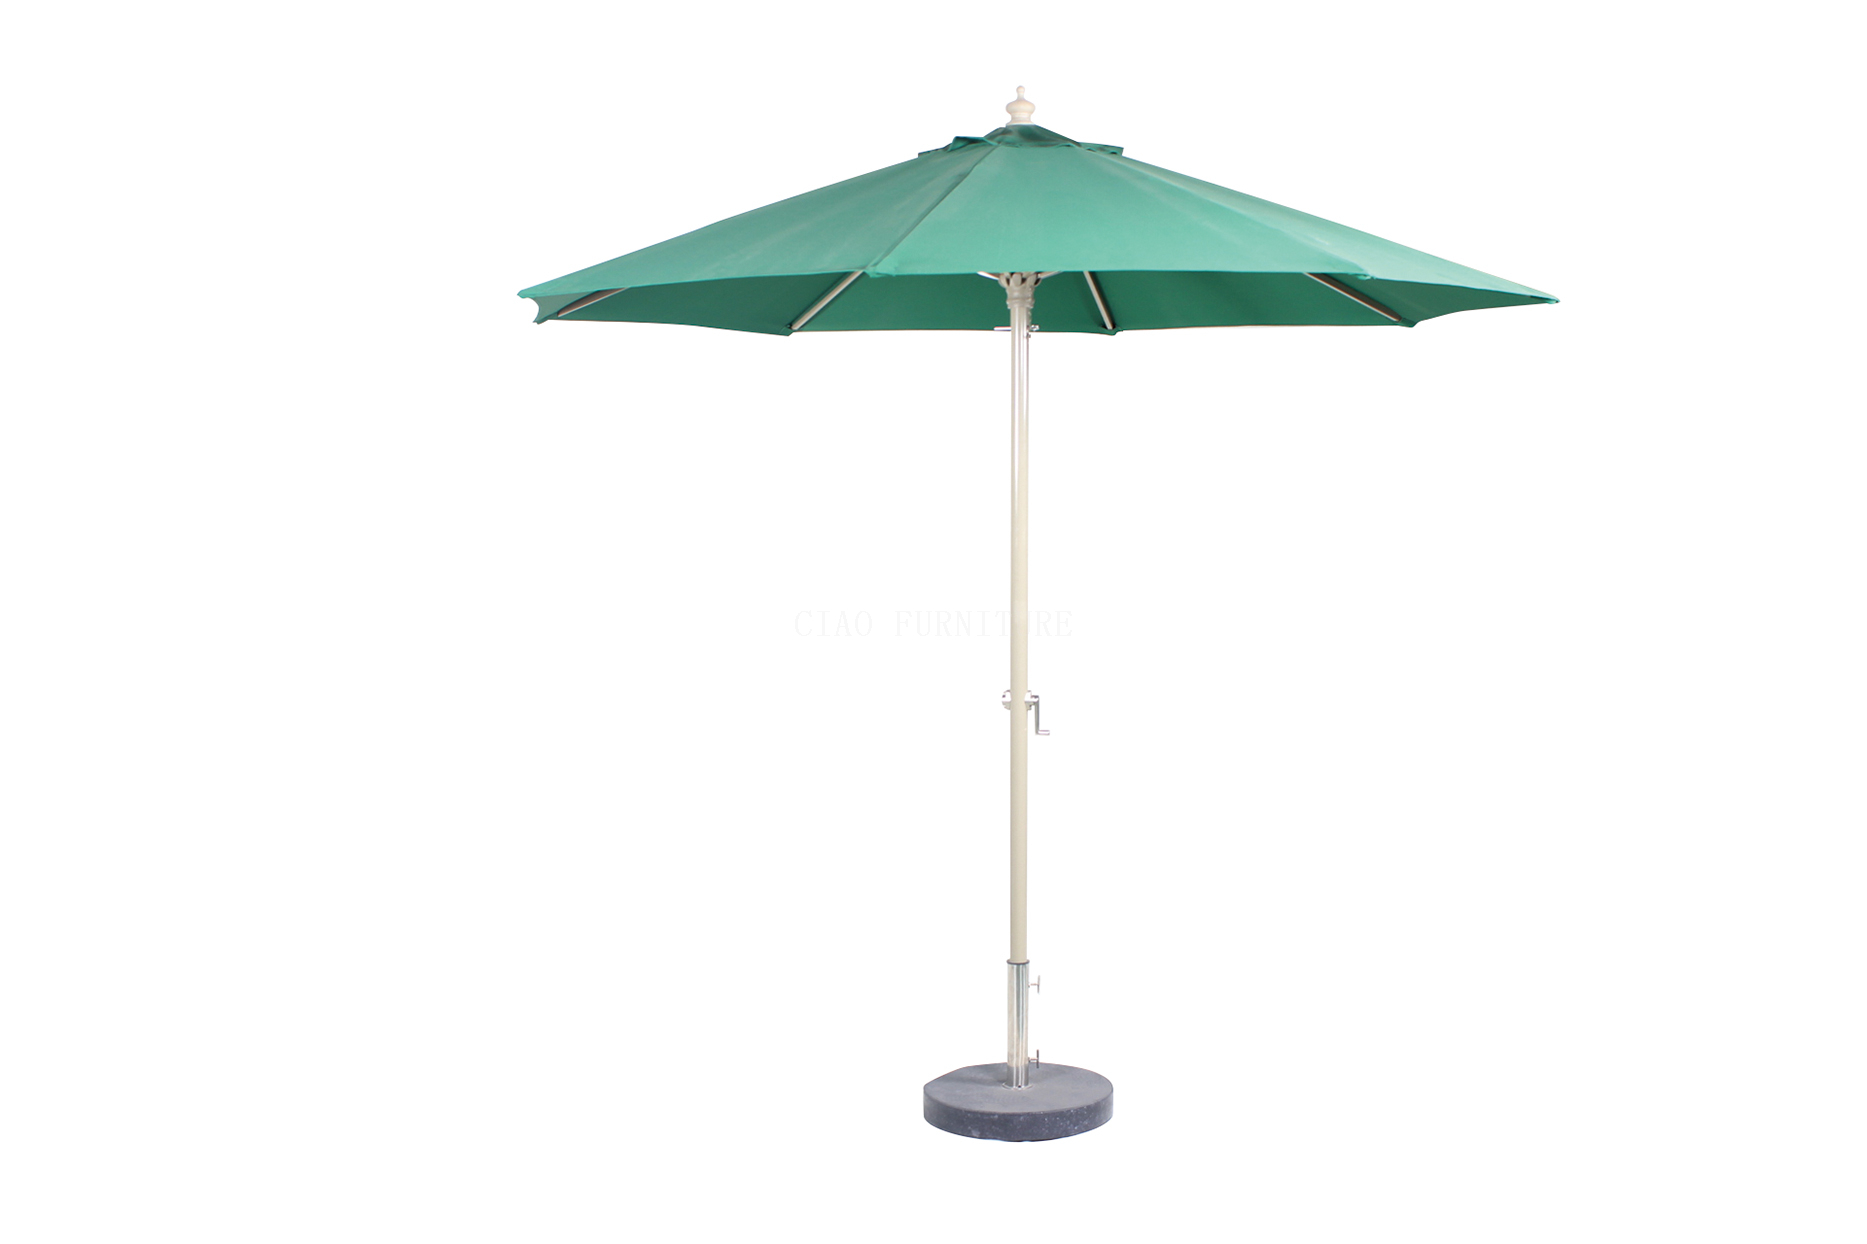 Green outdoor garden parasol umbrella